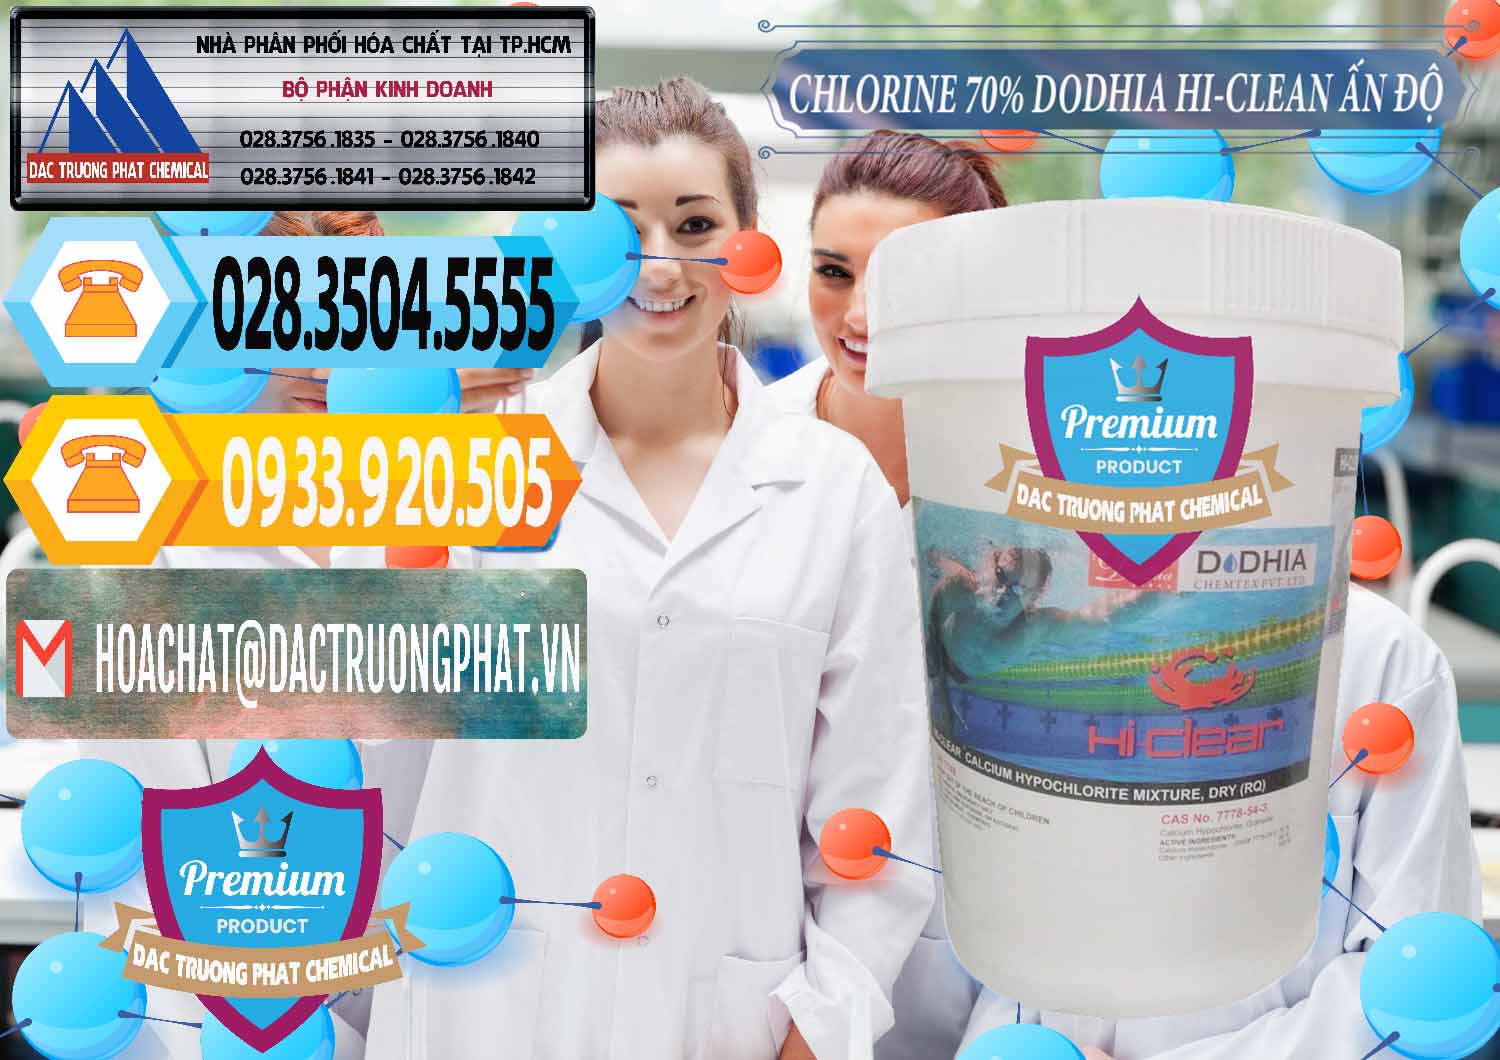 Công ty chuyên bán & phân phối Chlorine – Clorin 70% Dodhia Hi-Clean Ấn Độ India - 0214 - Đơn vị cung cấp ( phân phối ) hóa chất tại TP.HCM - hoachattayrua.net